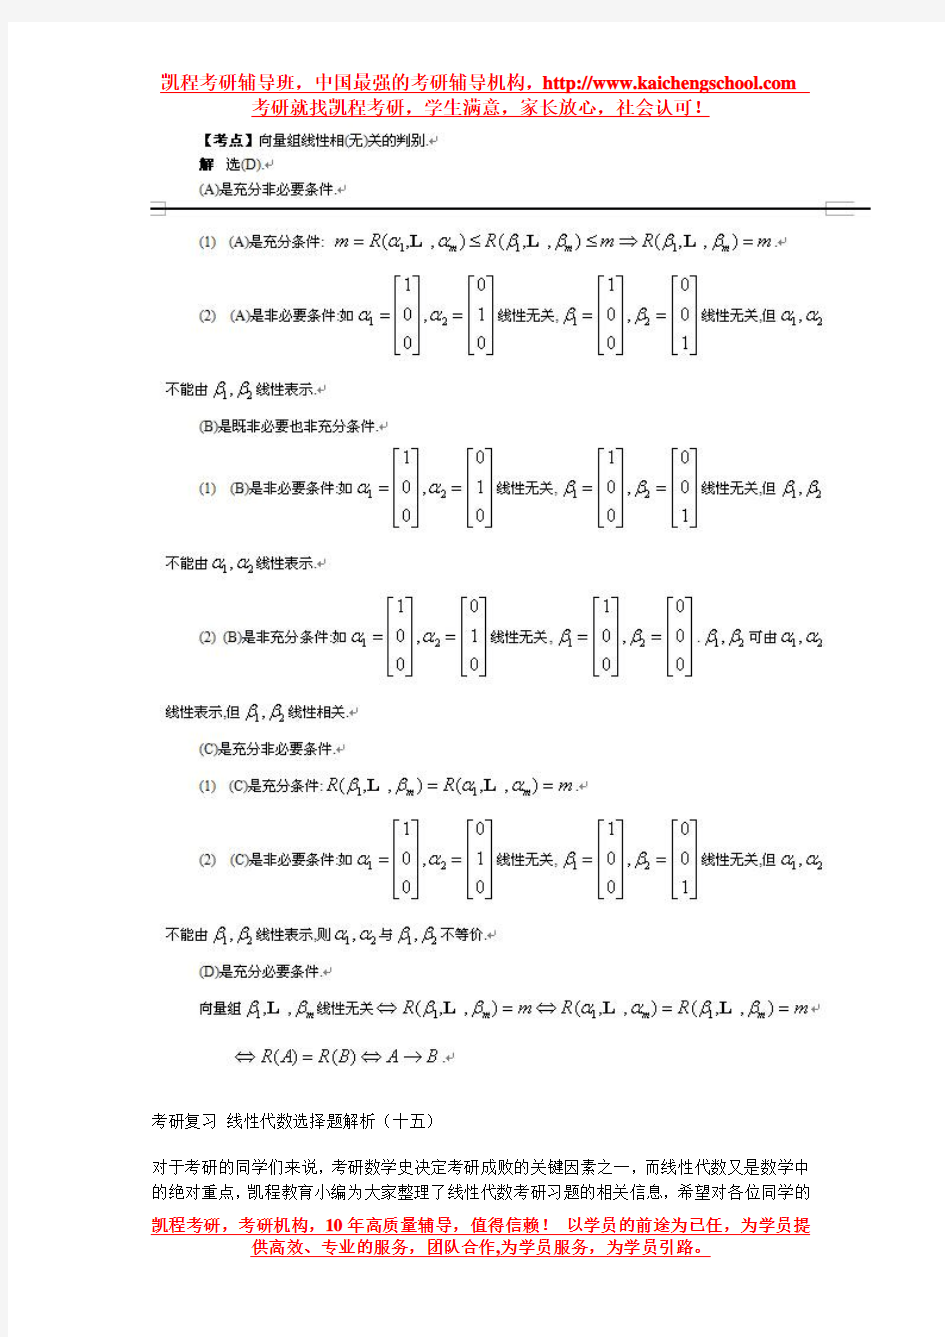 考研复习 线性代数选择题解析(十四)